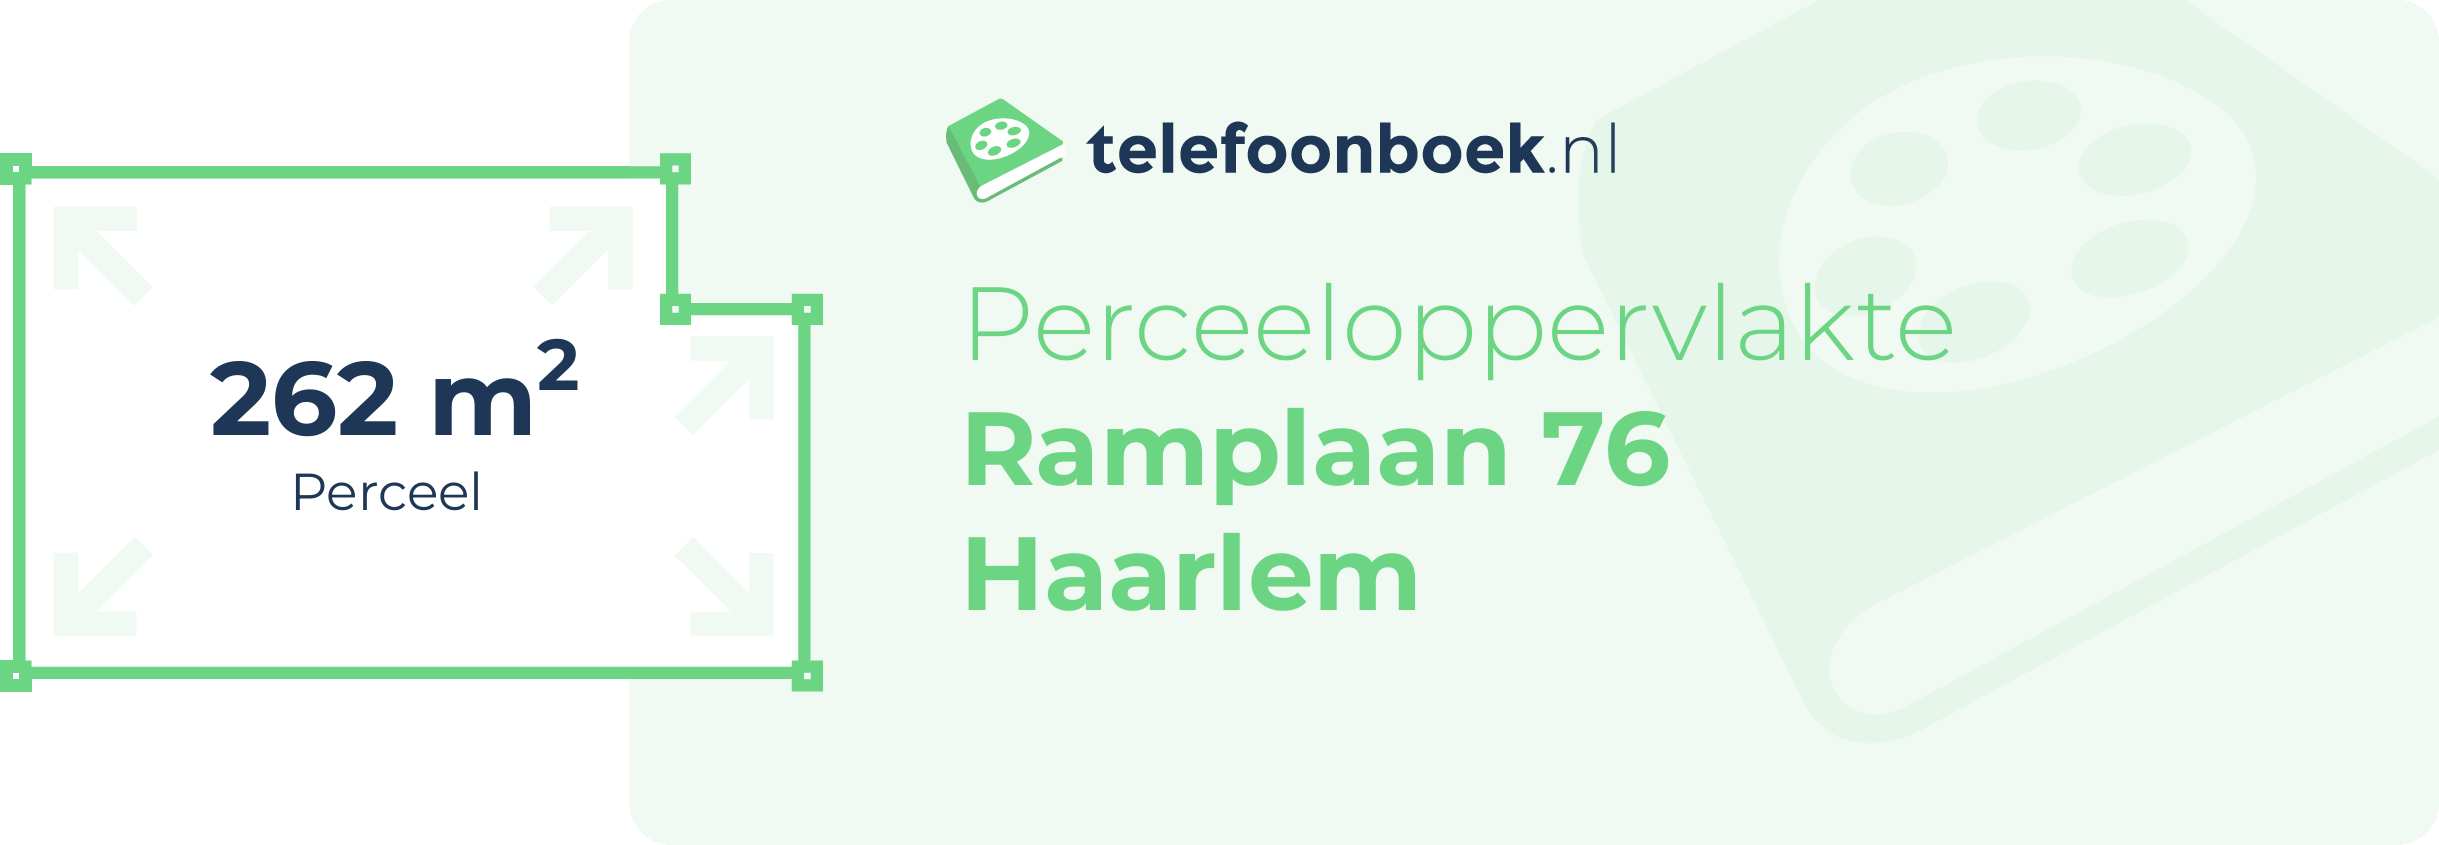 Perceeloppervlakte Ramplaan 76 Haarlem